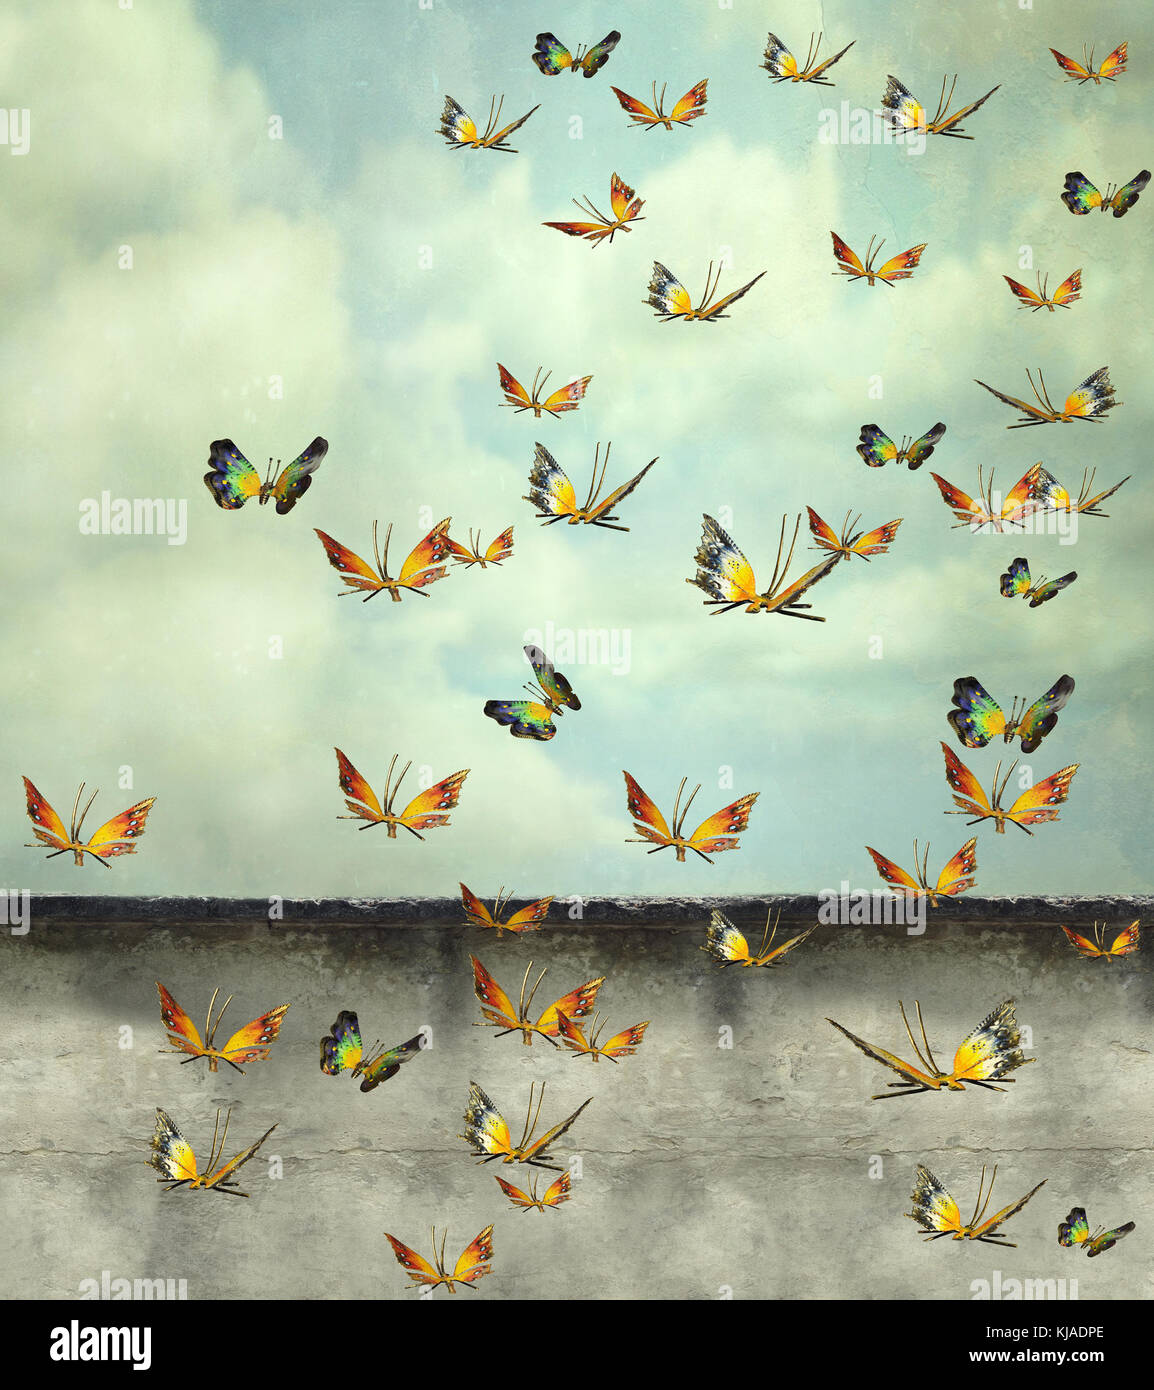 De nombreux papillons colorés voler dans le ciel avec une photo d'illustration, mur de déroulage et artistique Banque D'Images